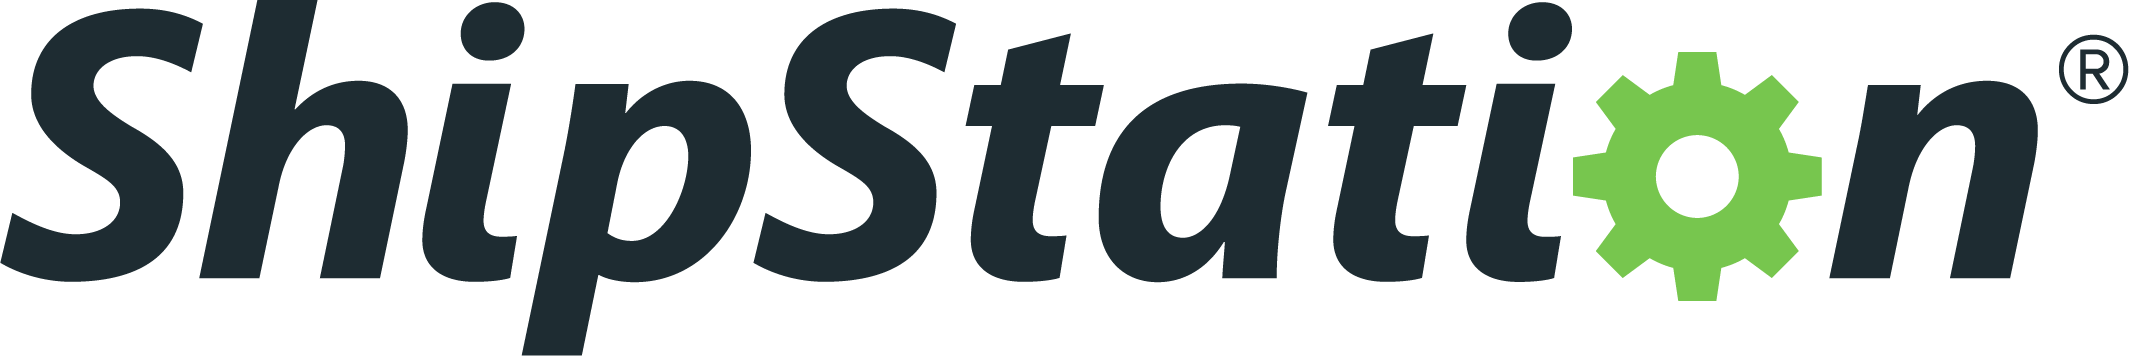 ShipStation_-_Color_Logo.png